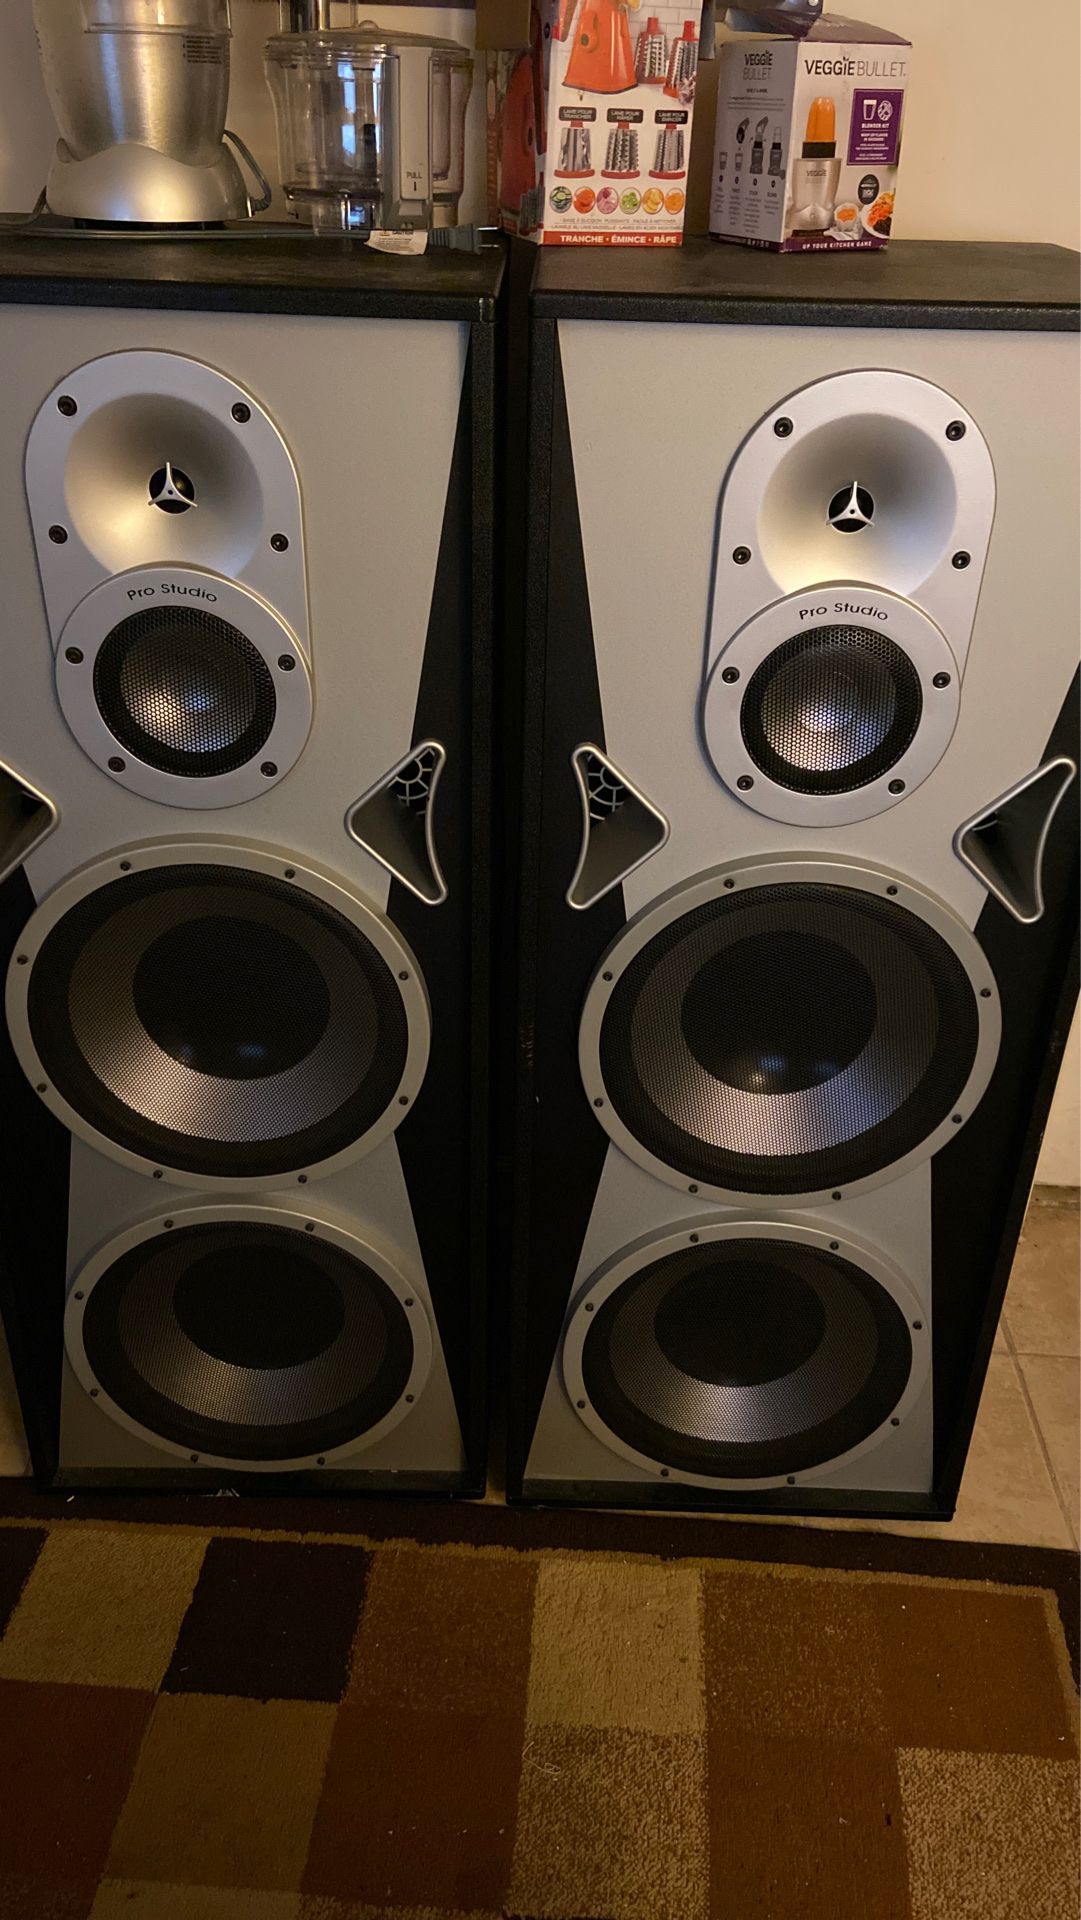 Speakers Pro studio new 12 inch speakers